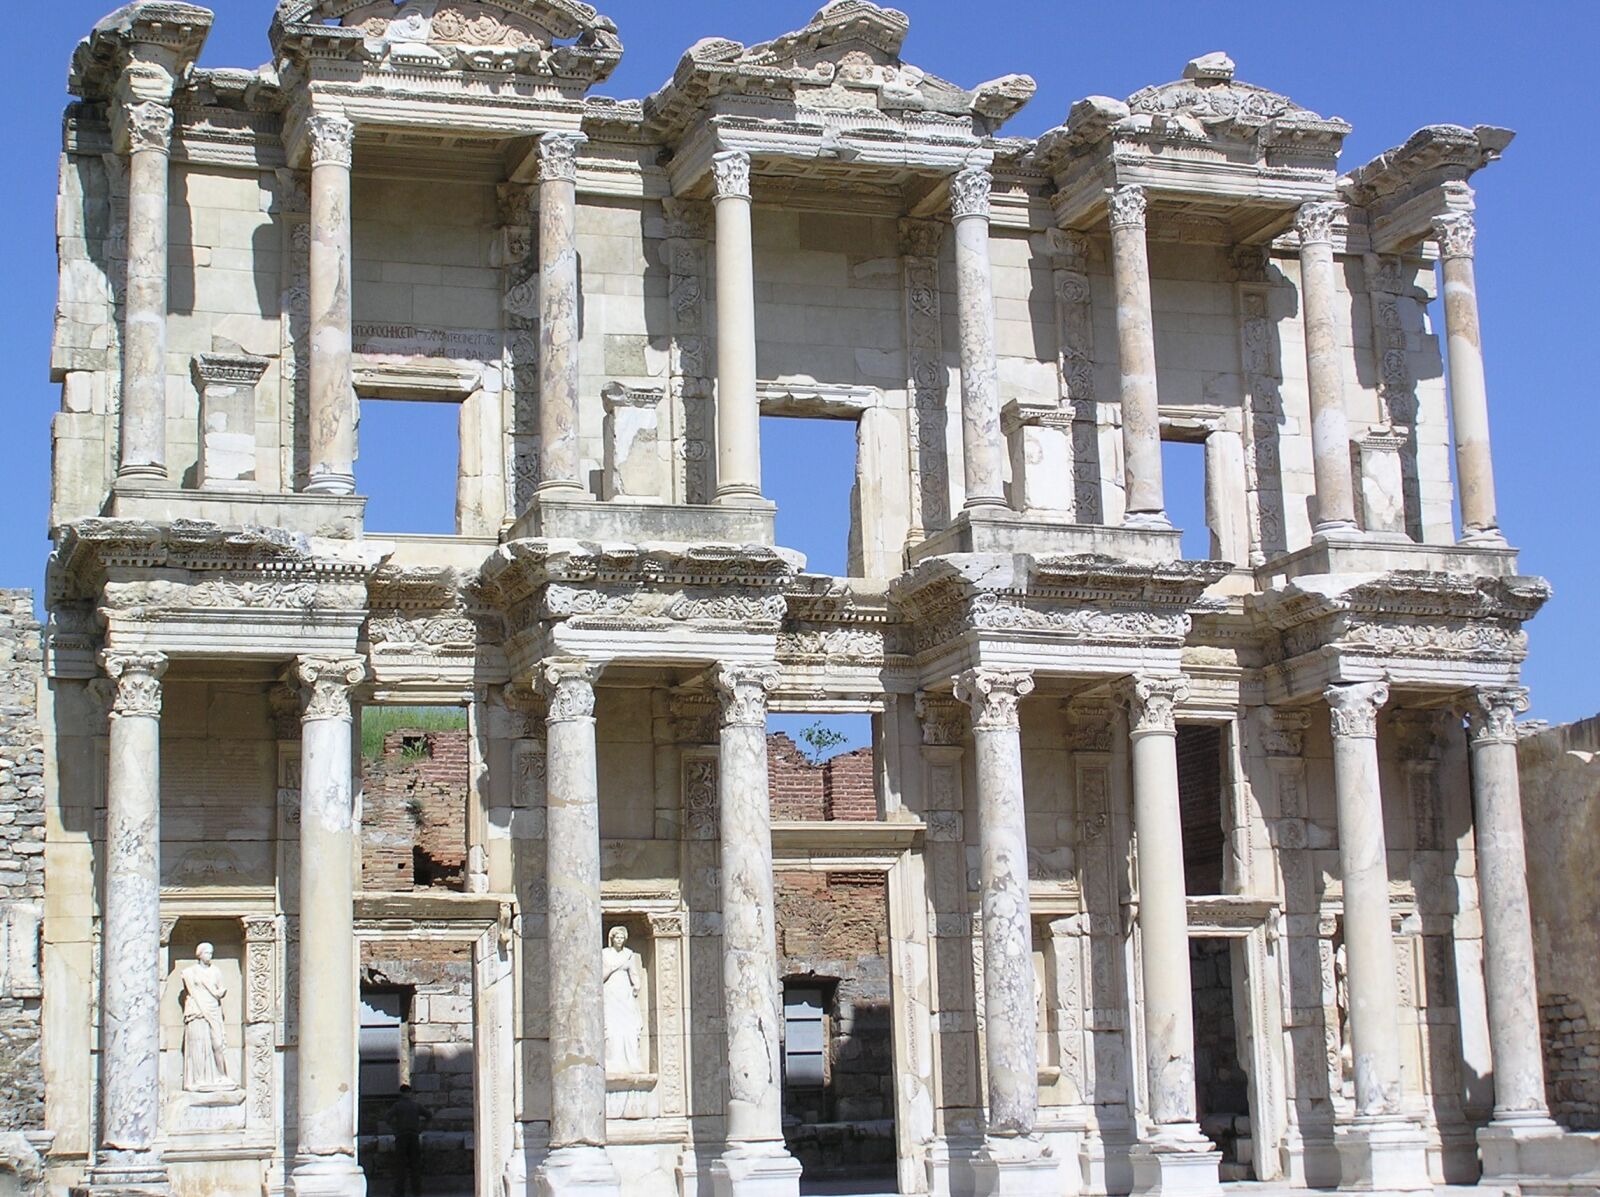 Olympus C750UZ sample photo. Ephesus, arches, multiple photography